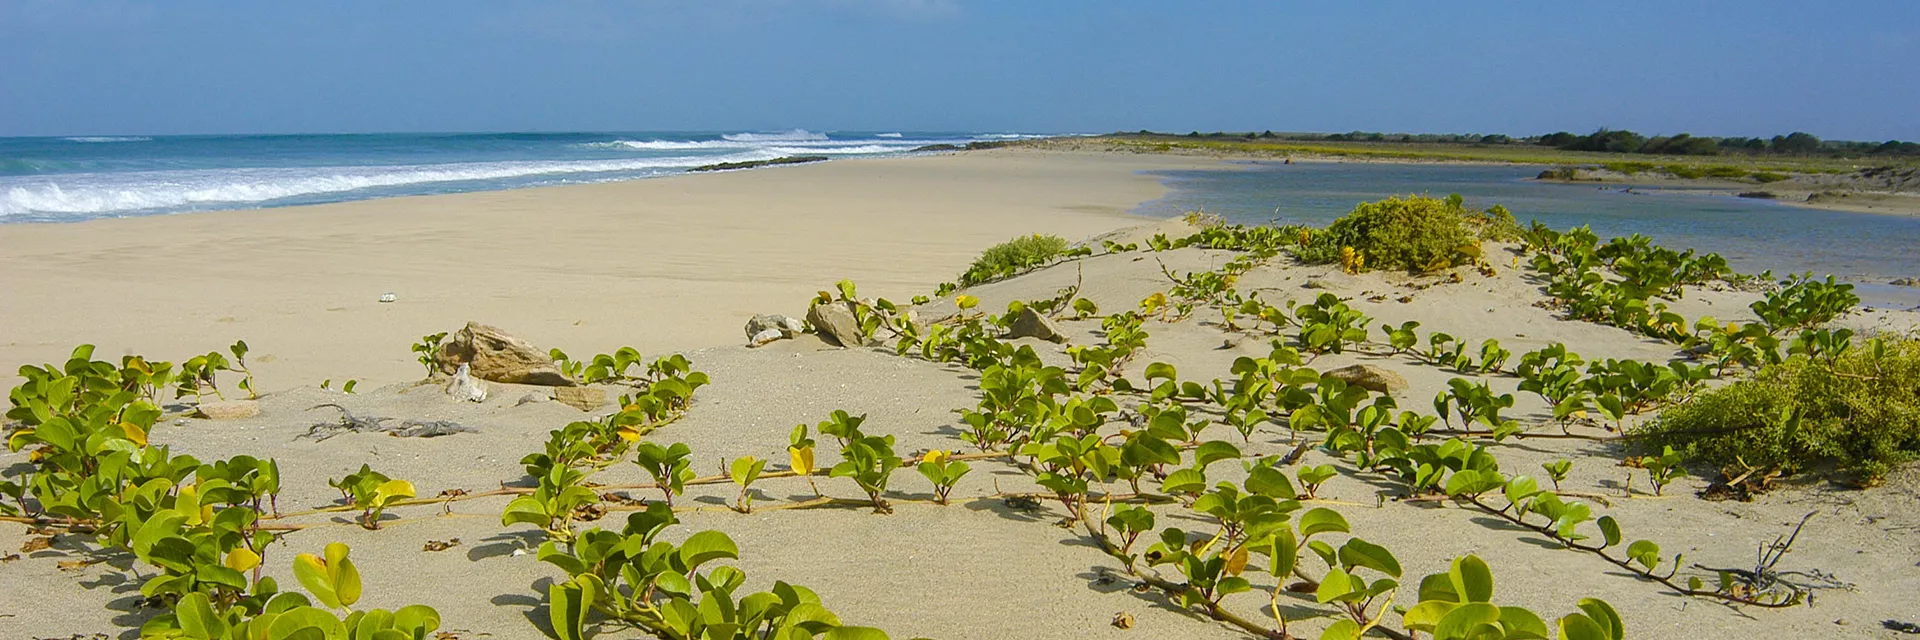 Cape Verdeaio Beach